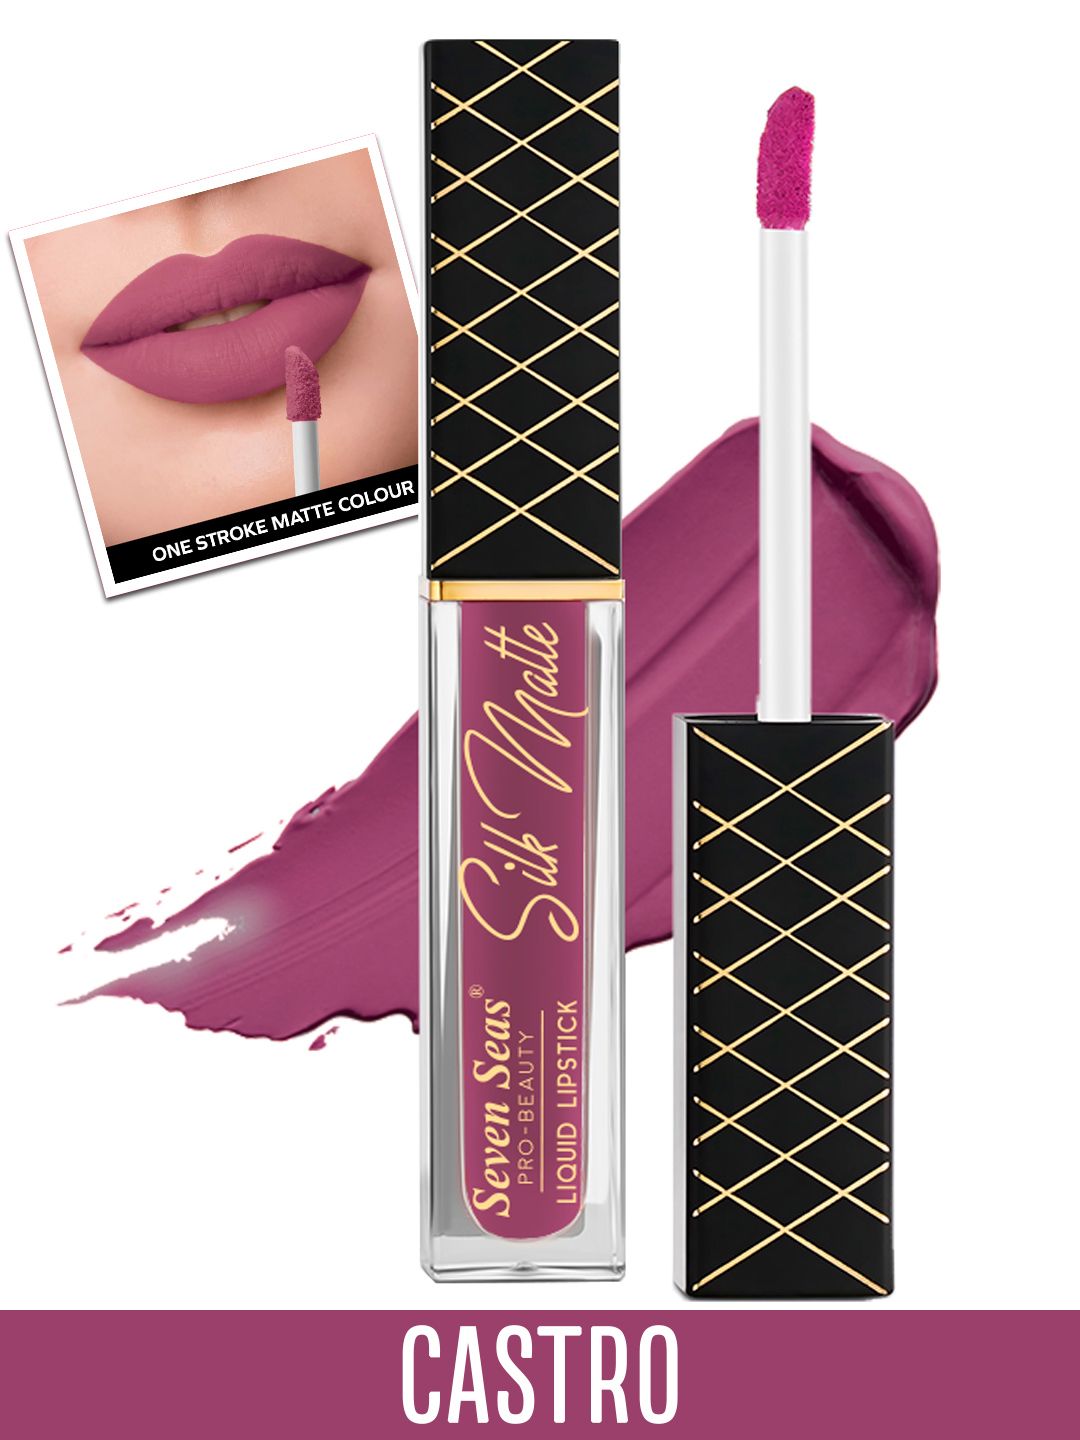 Seven Seas Silk Matte Liquid Lipstick 8g - Castro Price in India